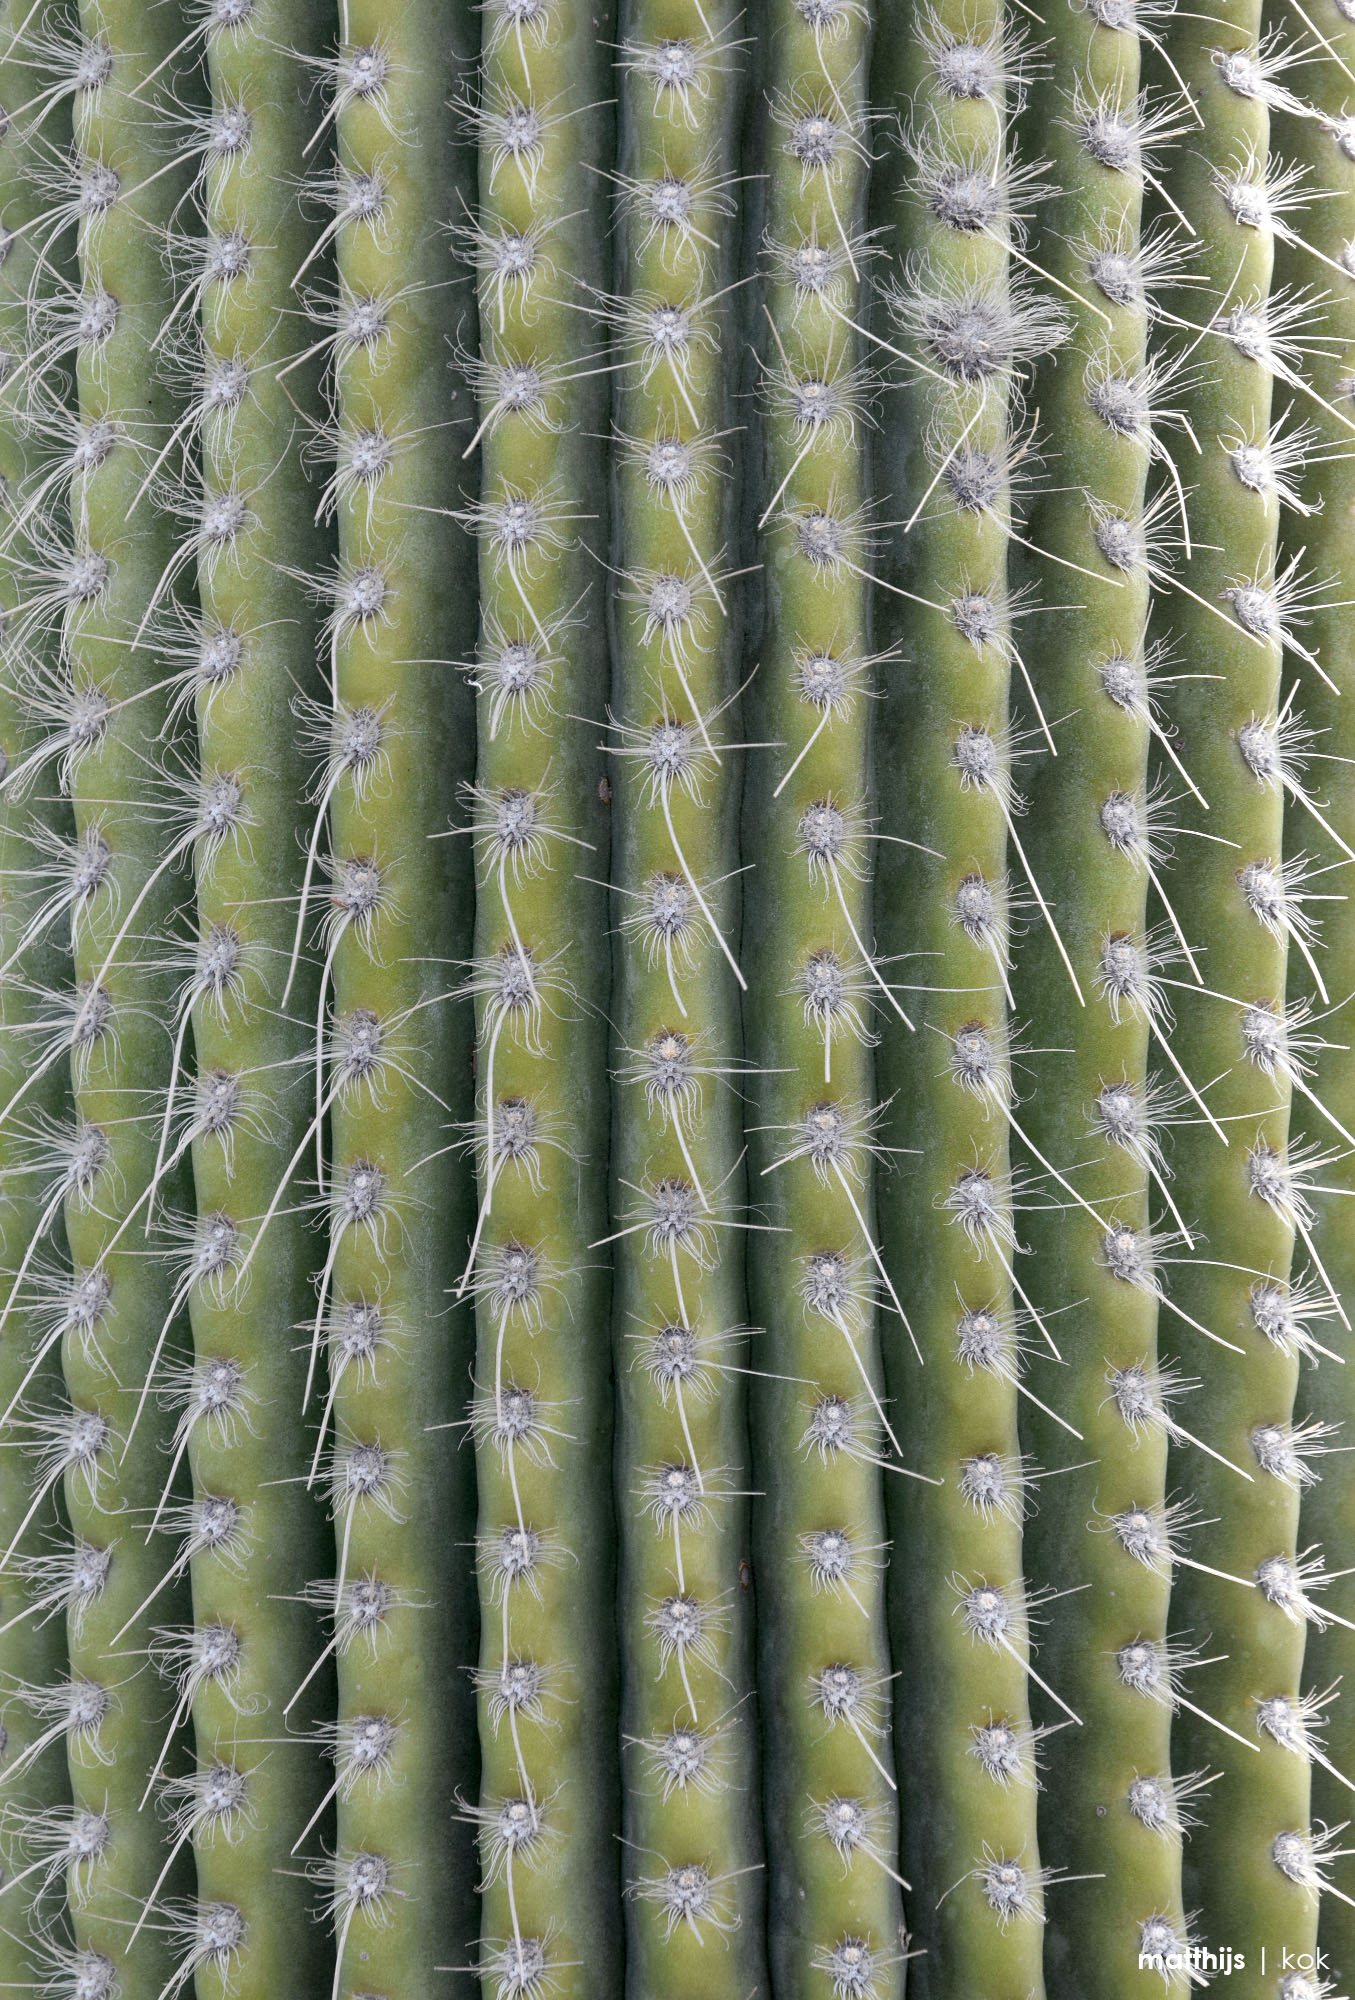 Jardín de Cactus, Lanzarote, Canary Islands, Spain | Photo by Matthijs Kok